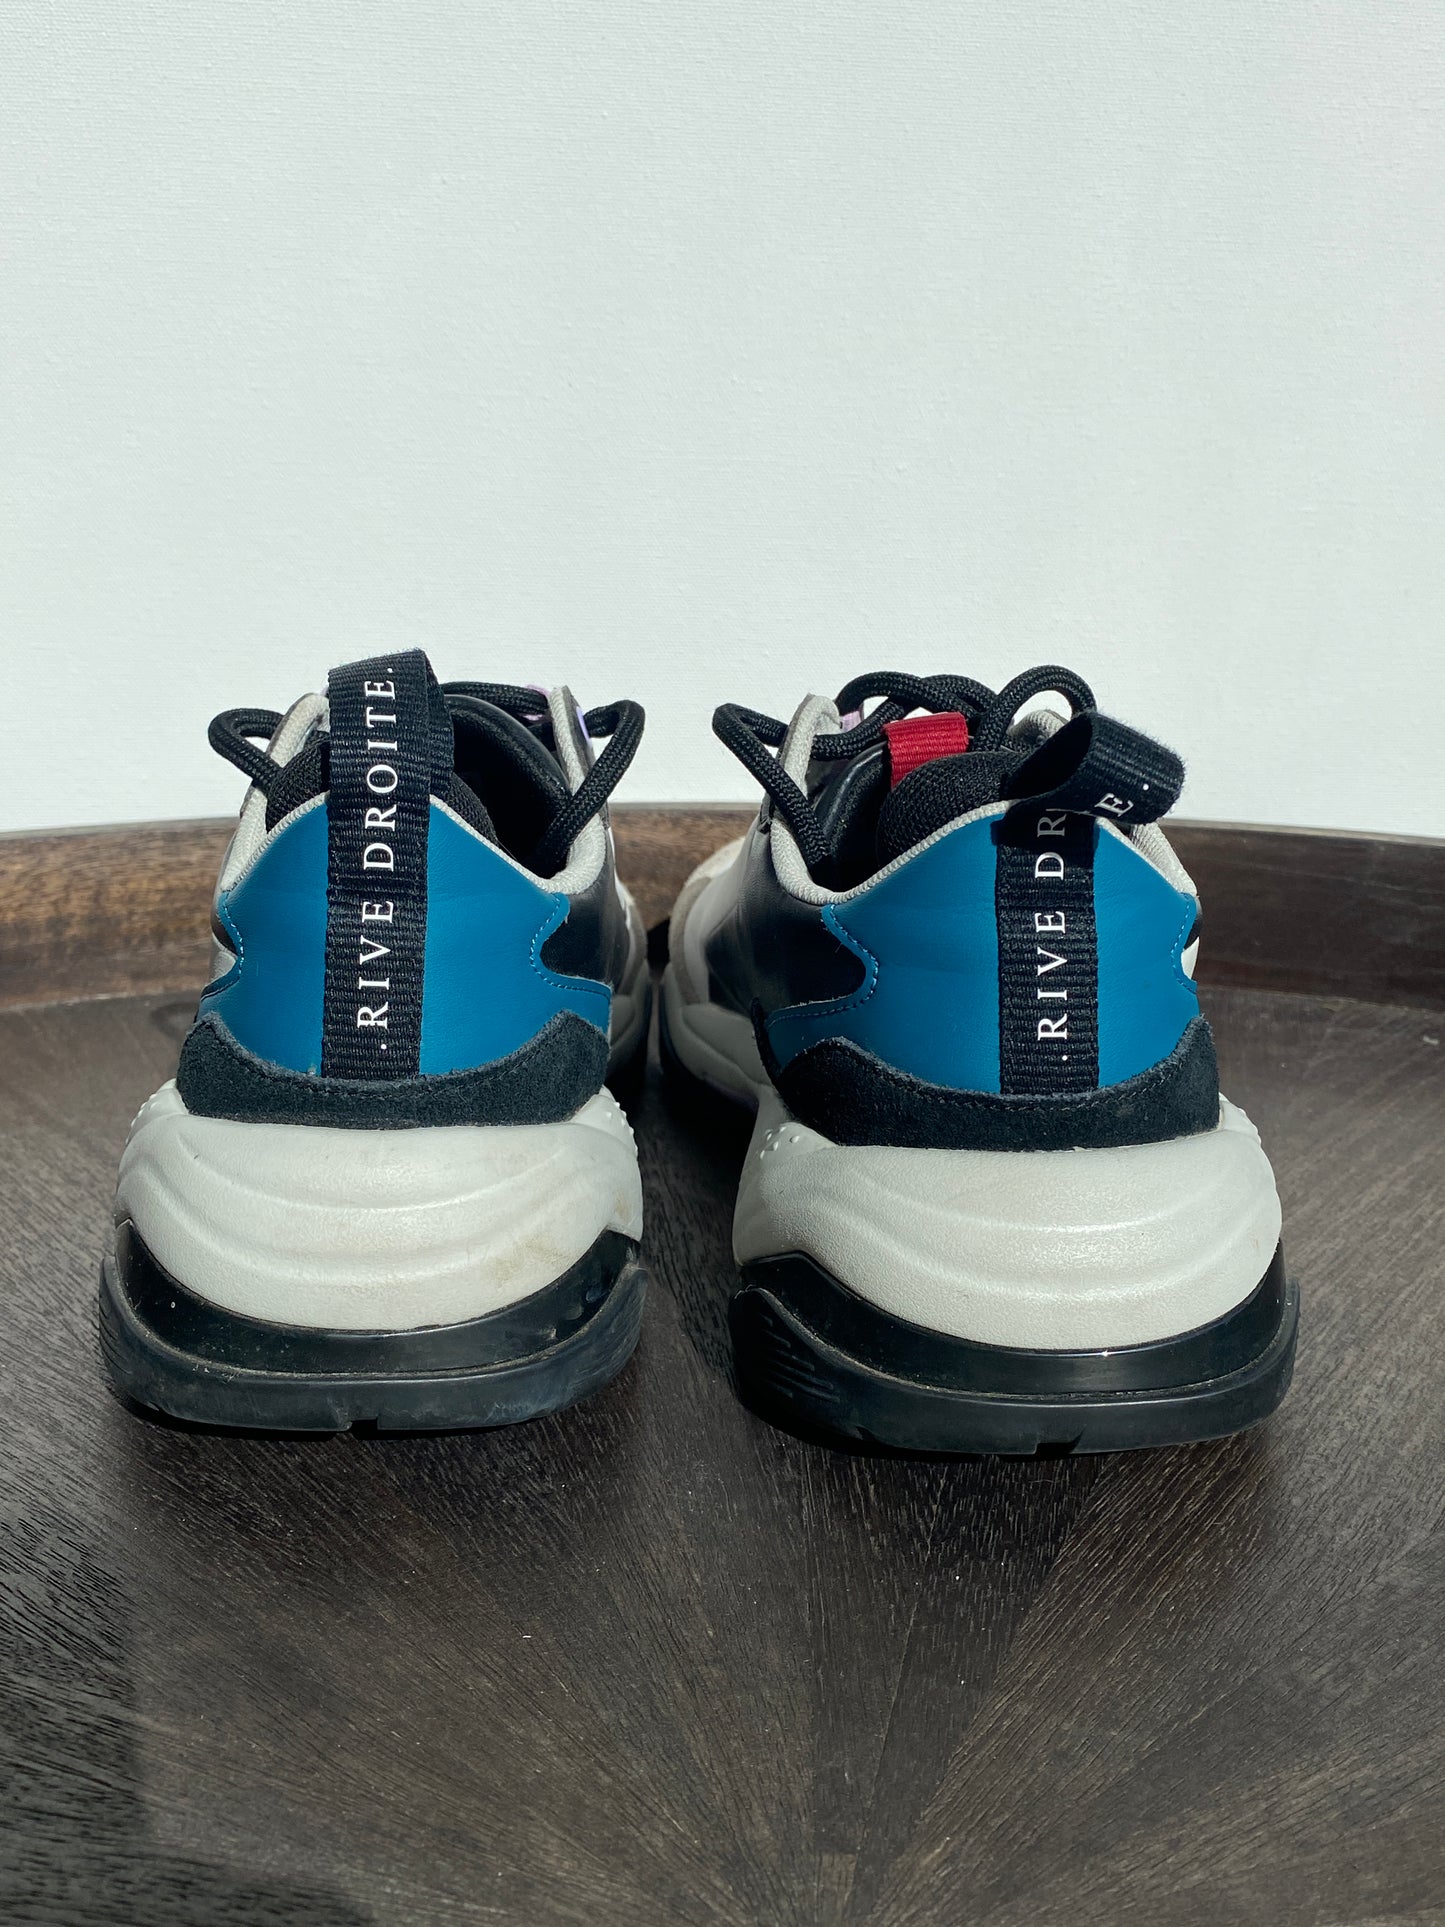 Puma Thunder Rive Droite Glacier Gray Sneakers (Size 9.5)